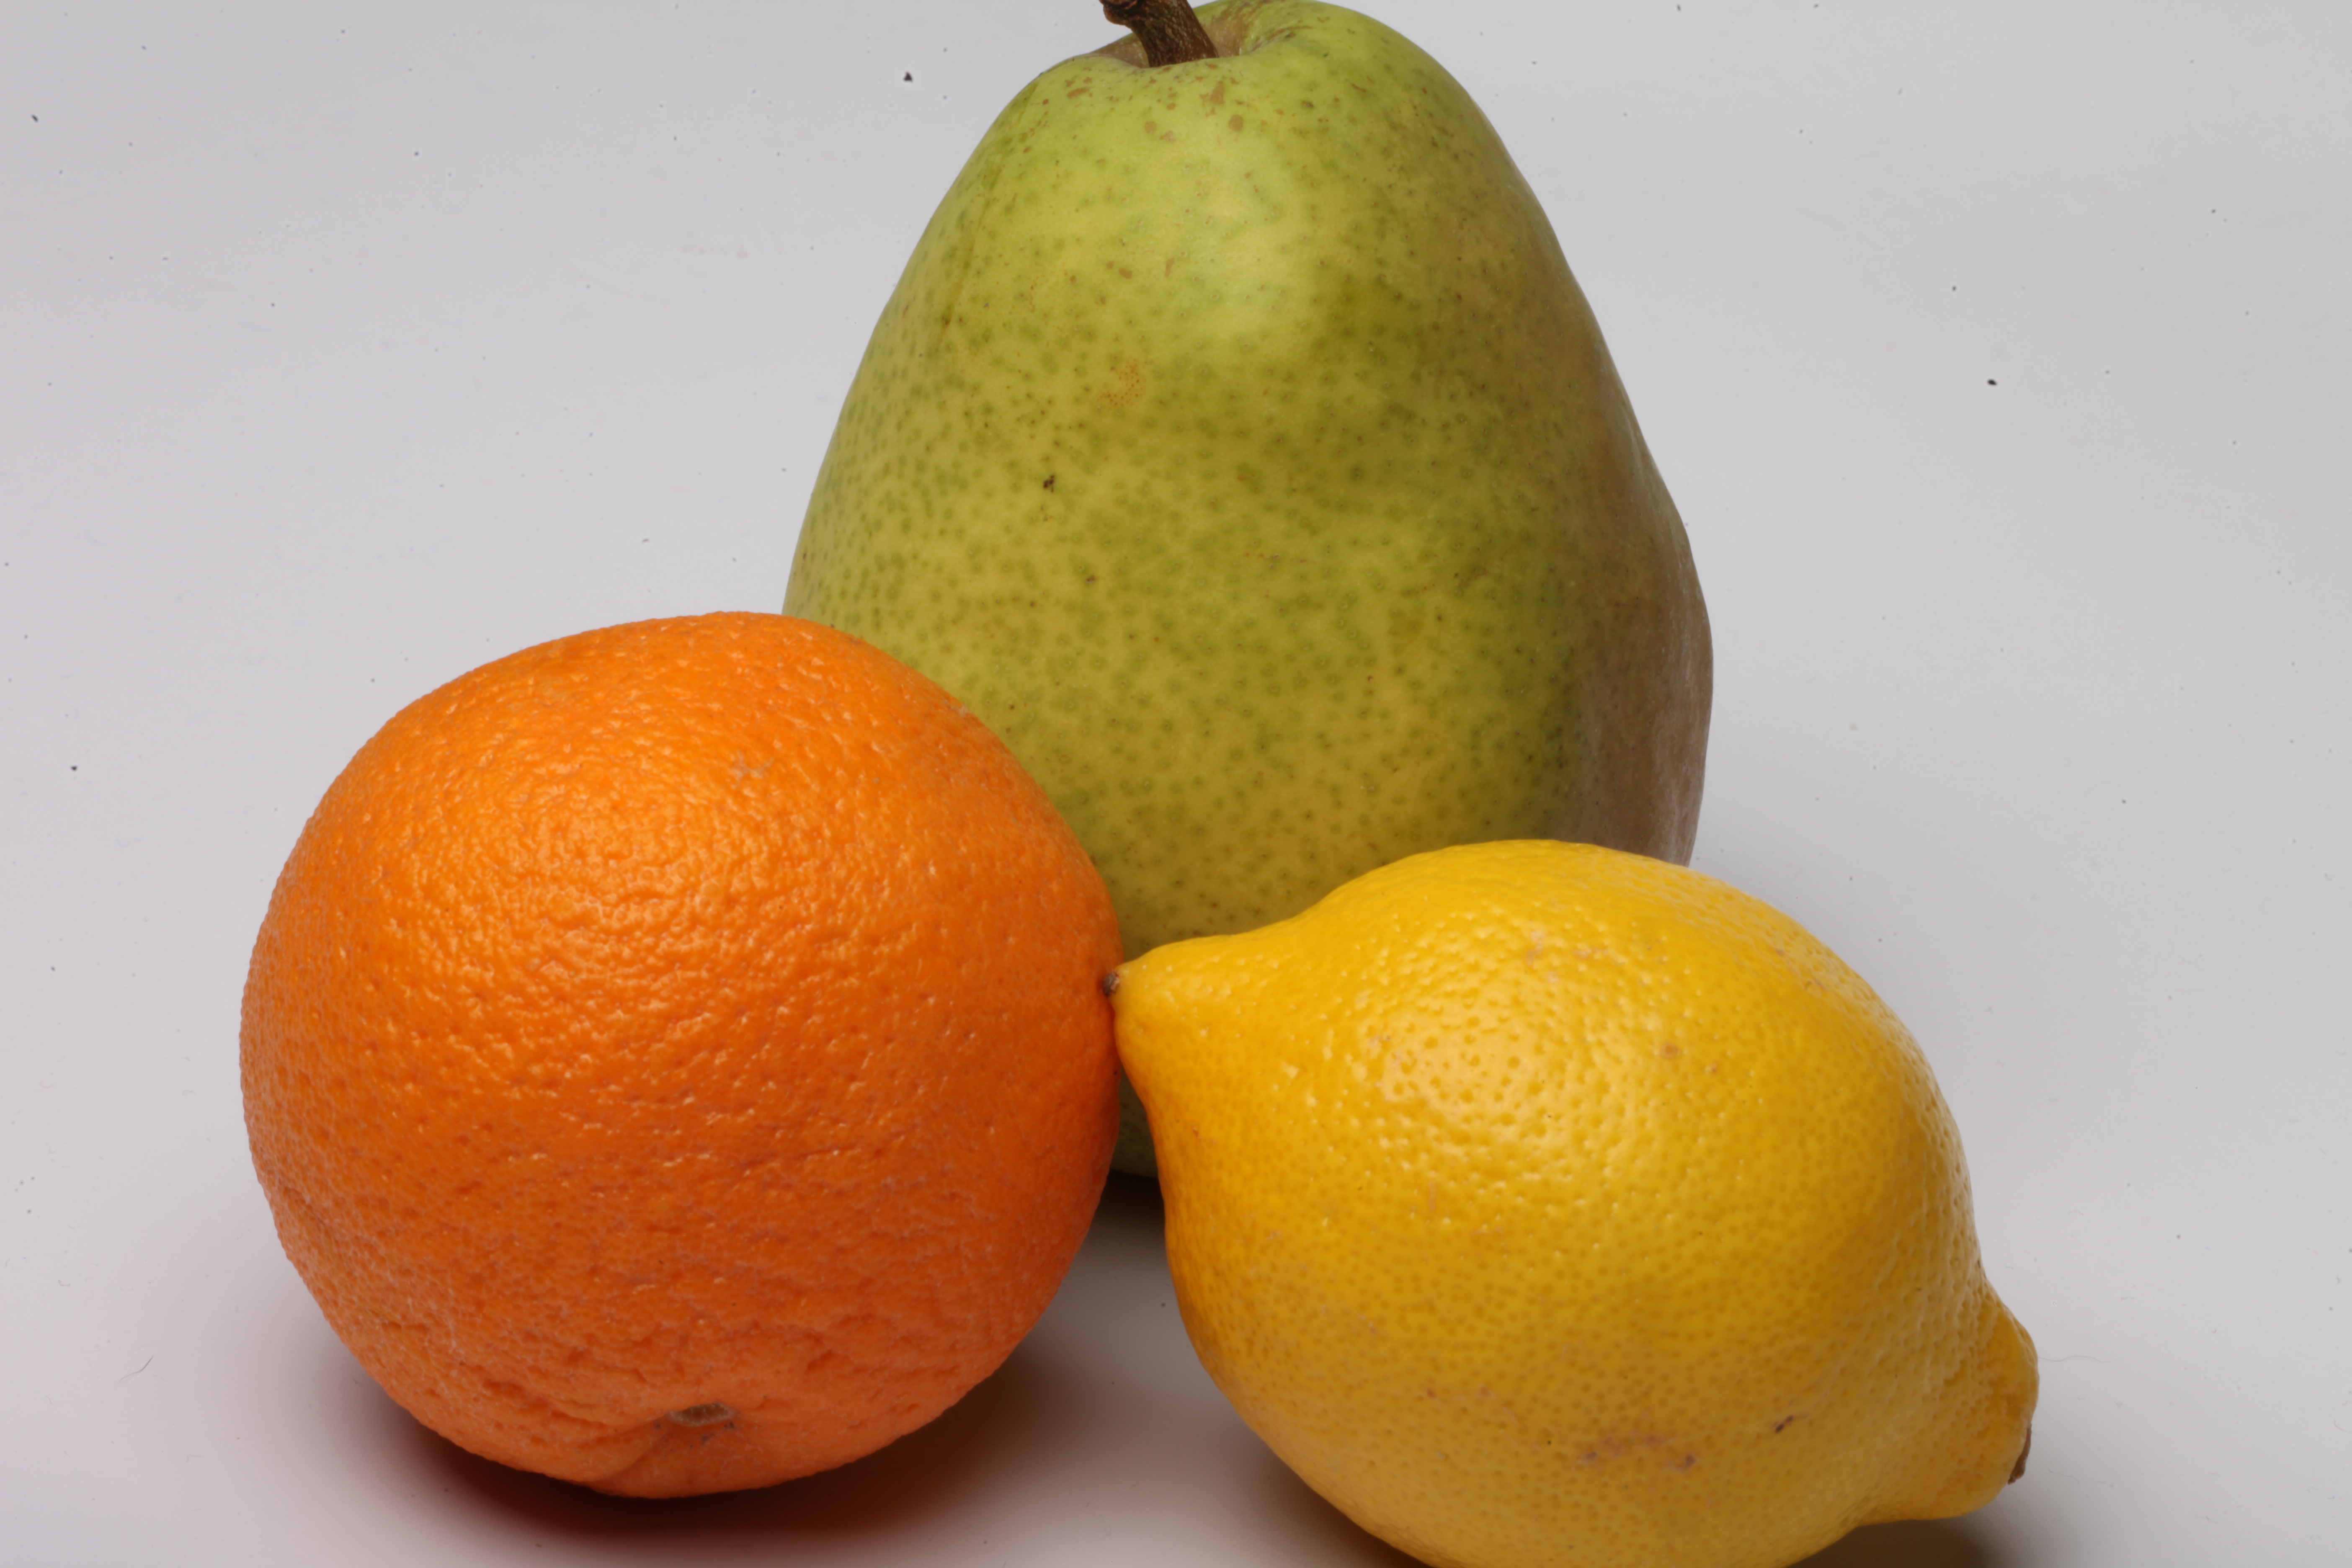 Lemon, pear and orange isolated on white photo